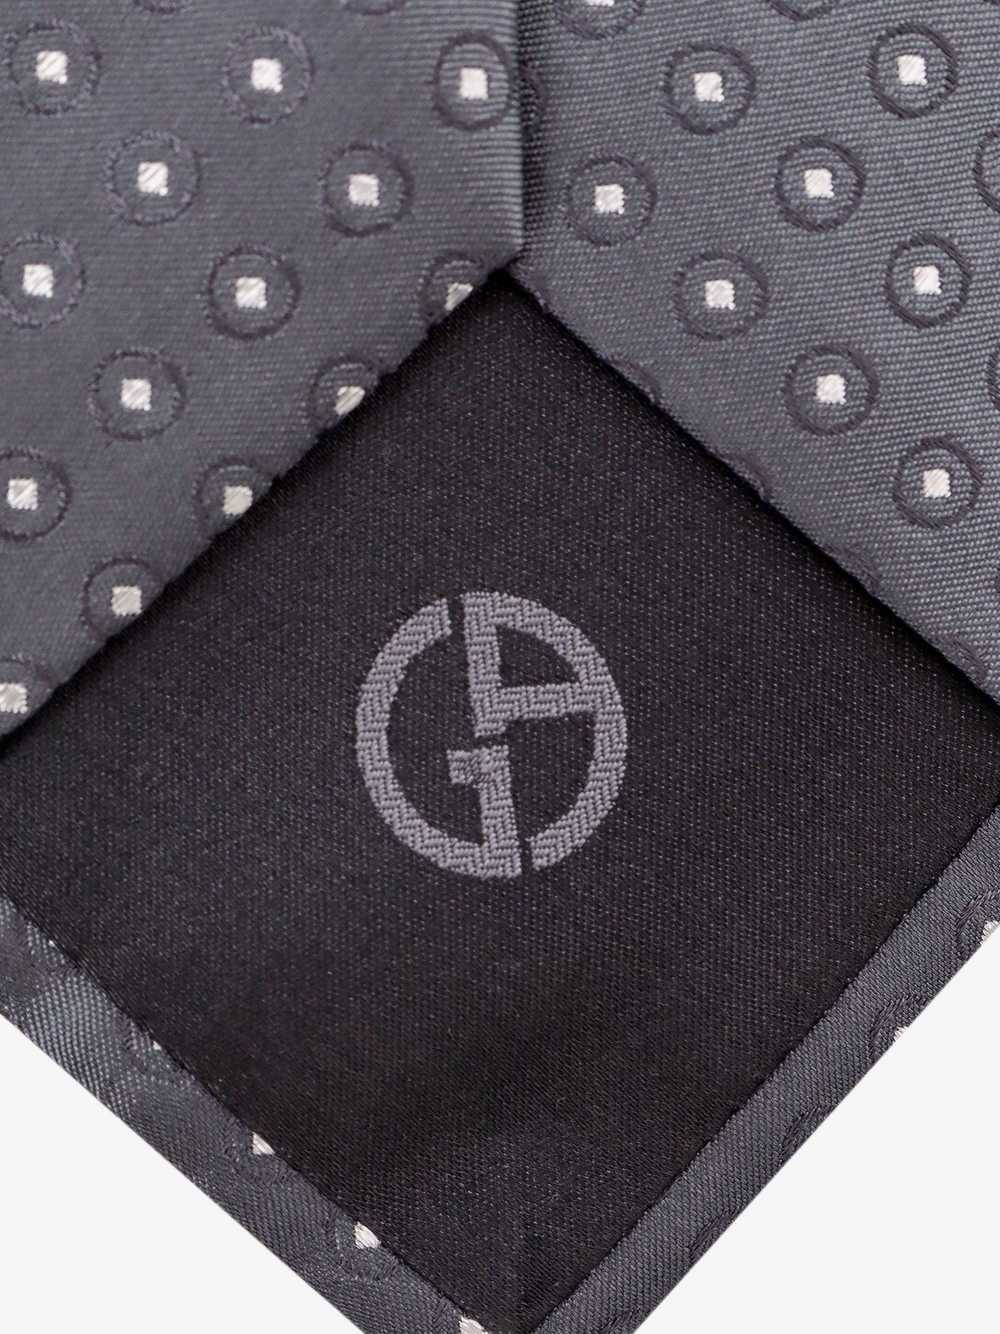 Giorgio Armani Tie Man Grey Bowties E Ties - image 3